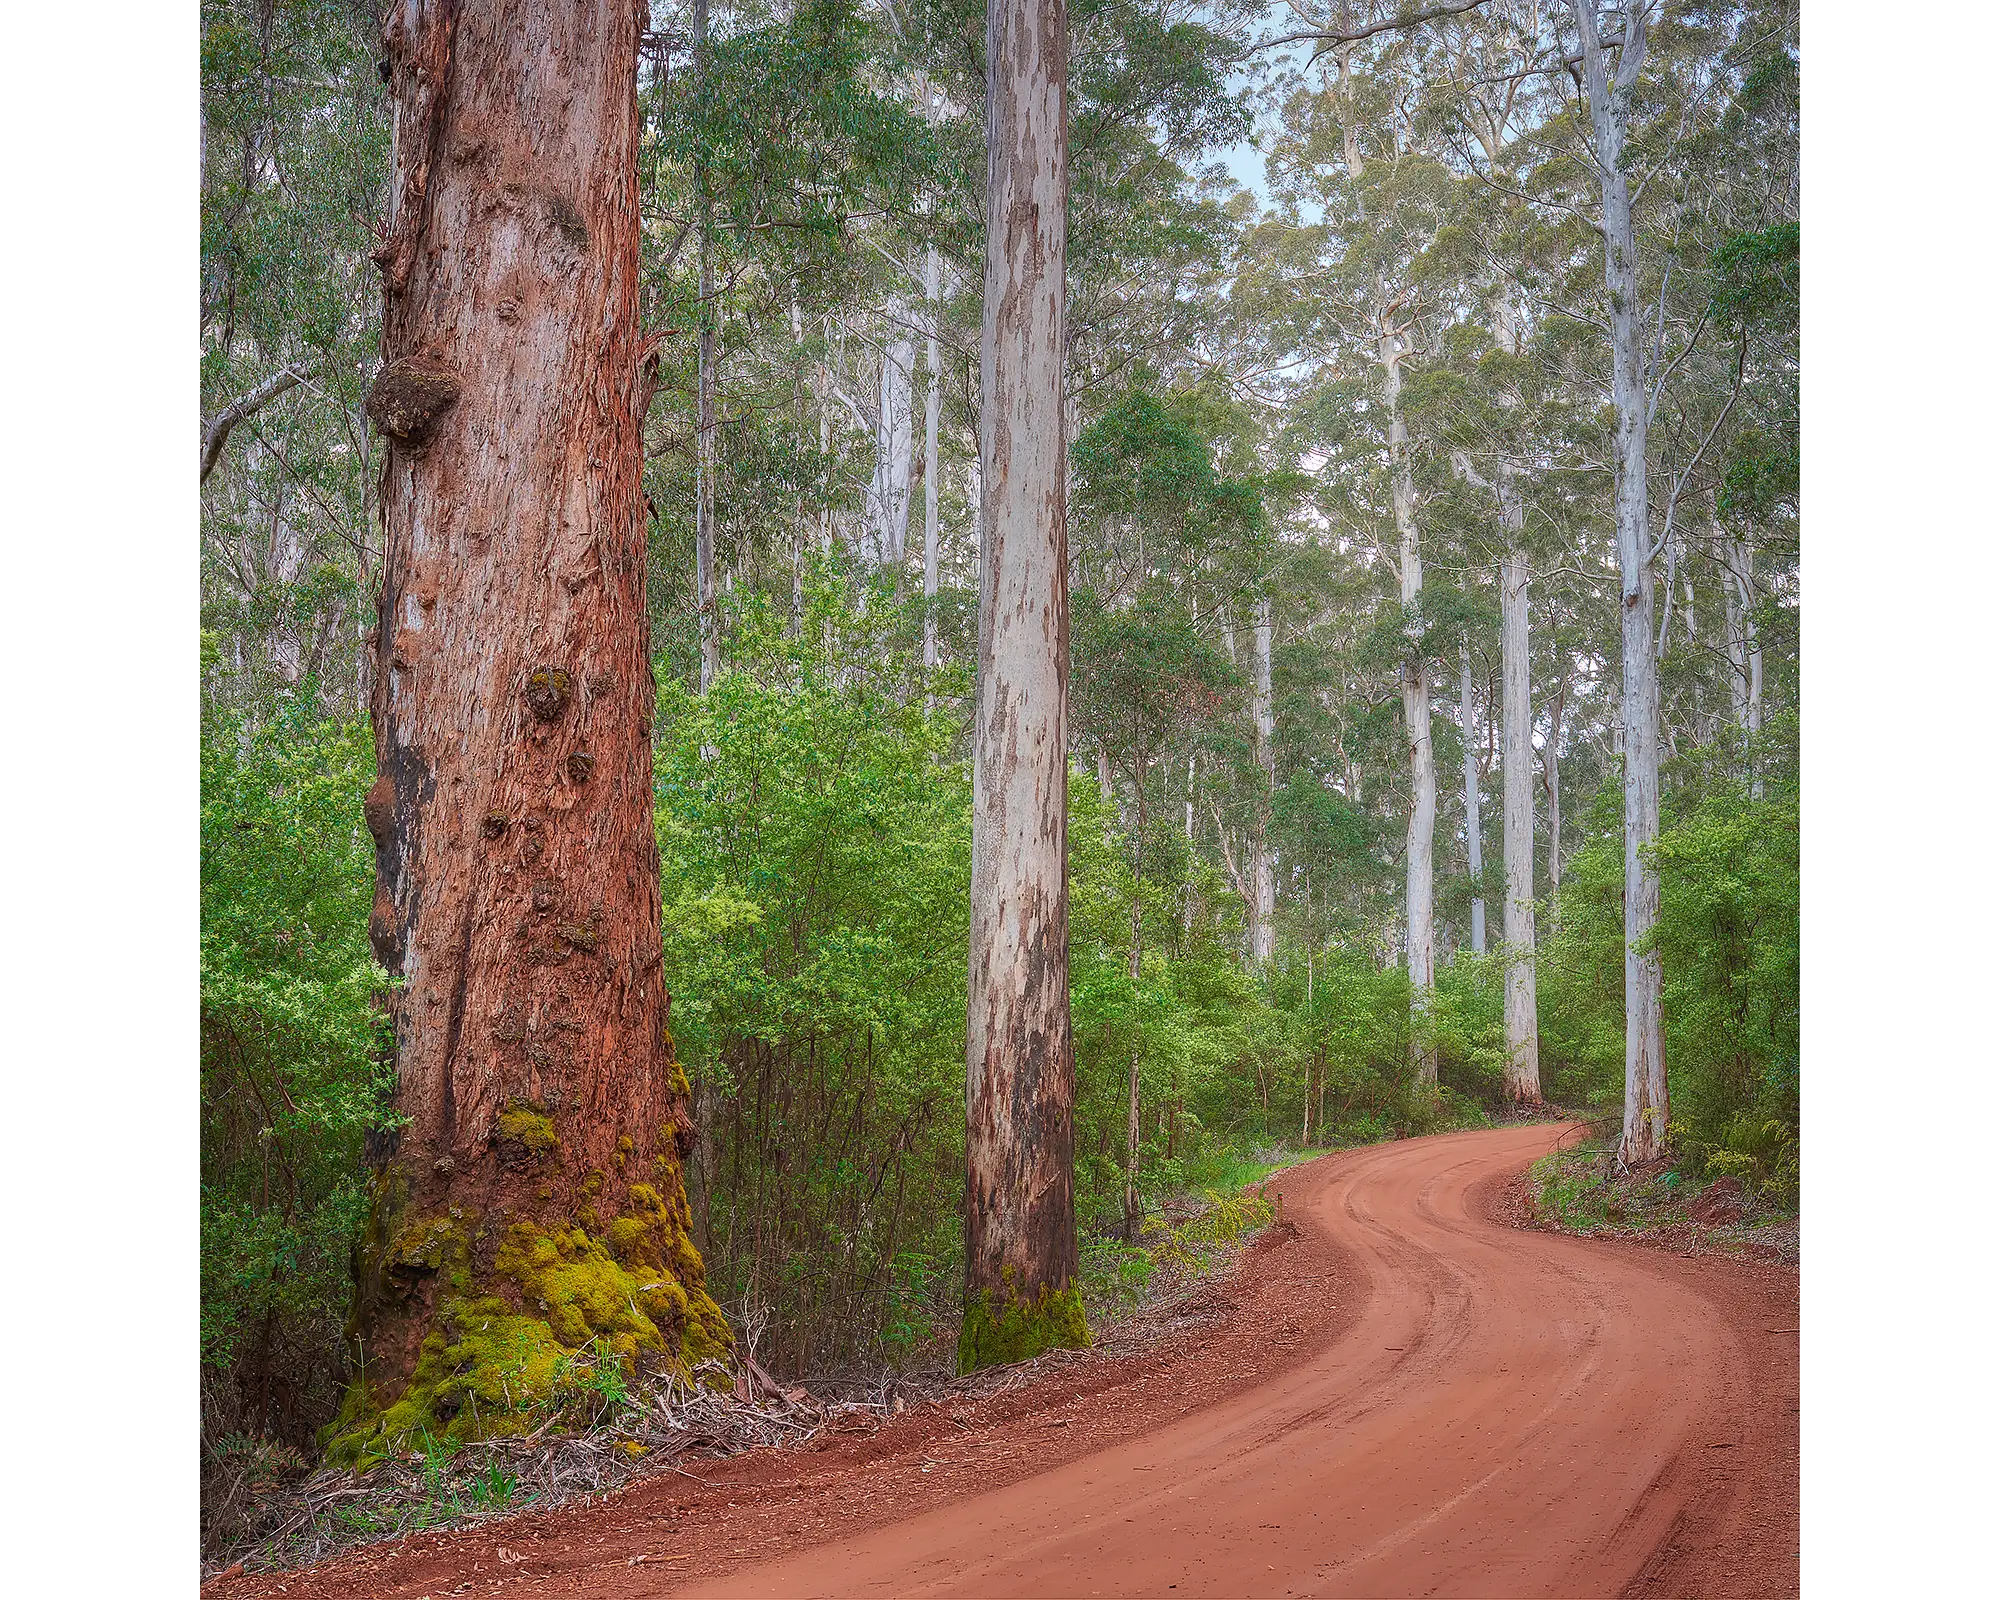 Road through Karri forest, Warren National Park, Western Australia.